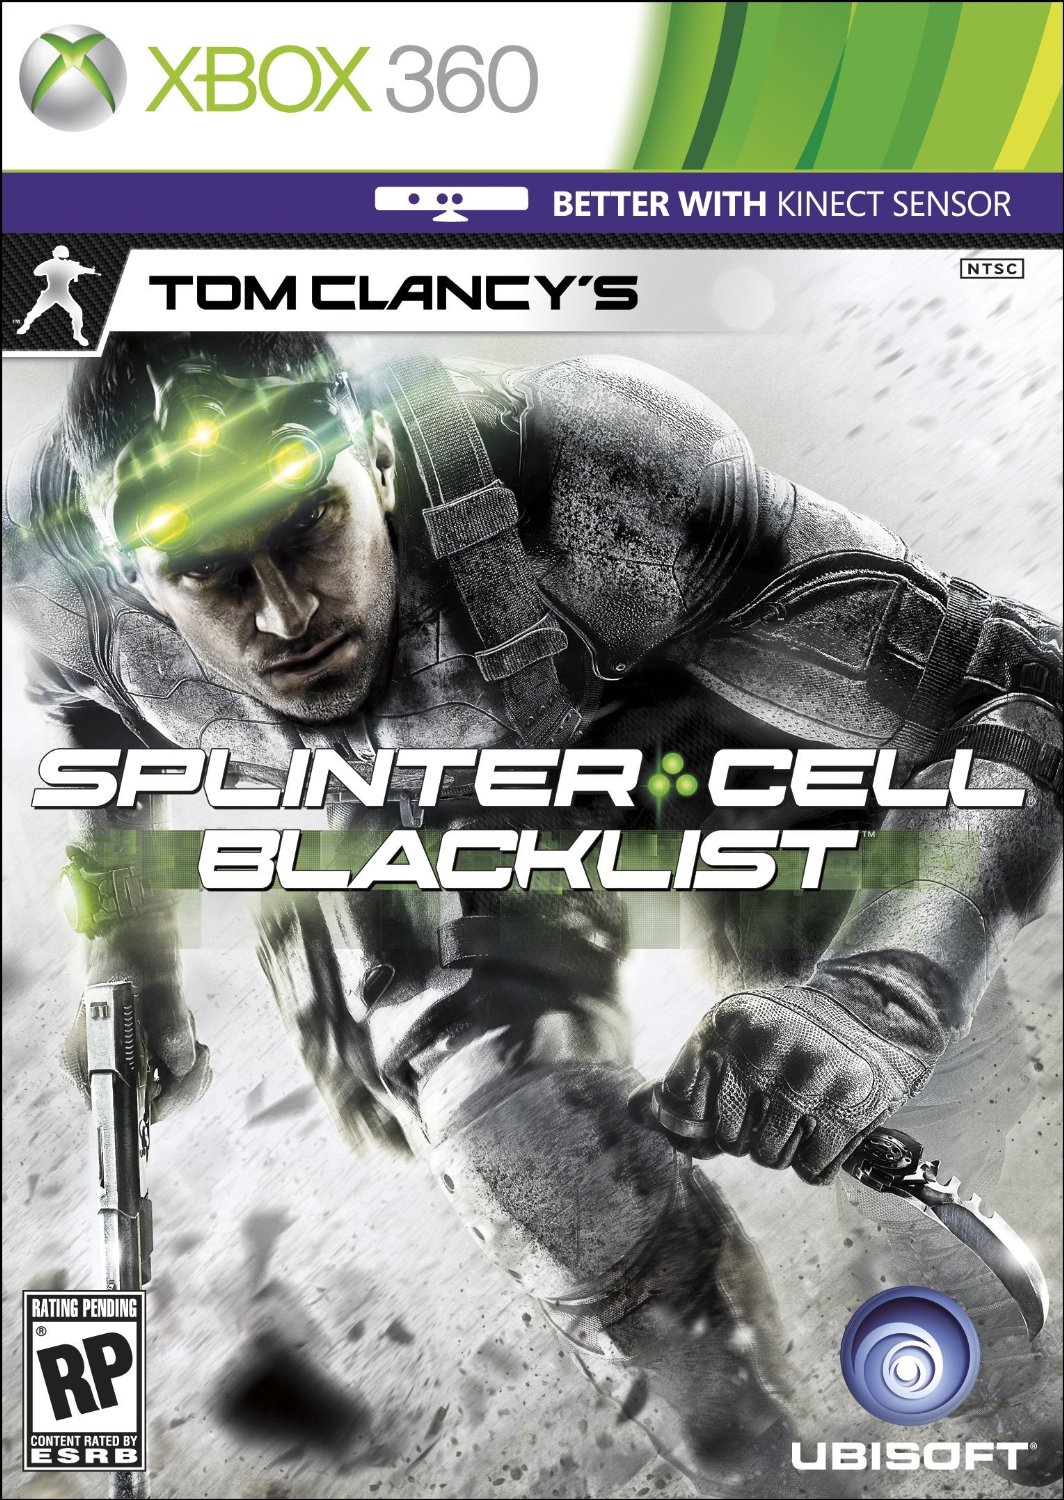 E3 2013: Ubisoft Debuts New Splinter Cell: Blacklist Trailer, Confirms Spies vs. Mercs